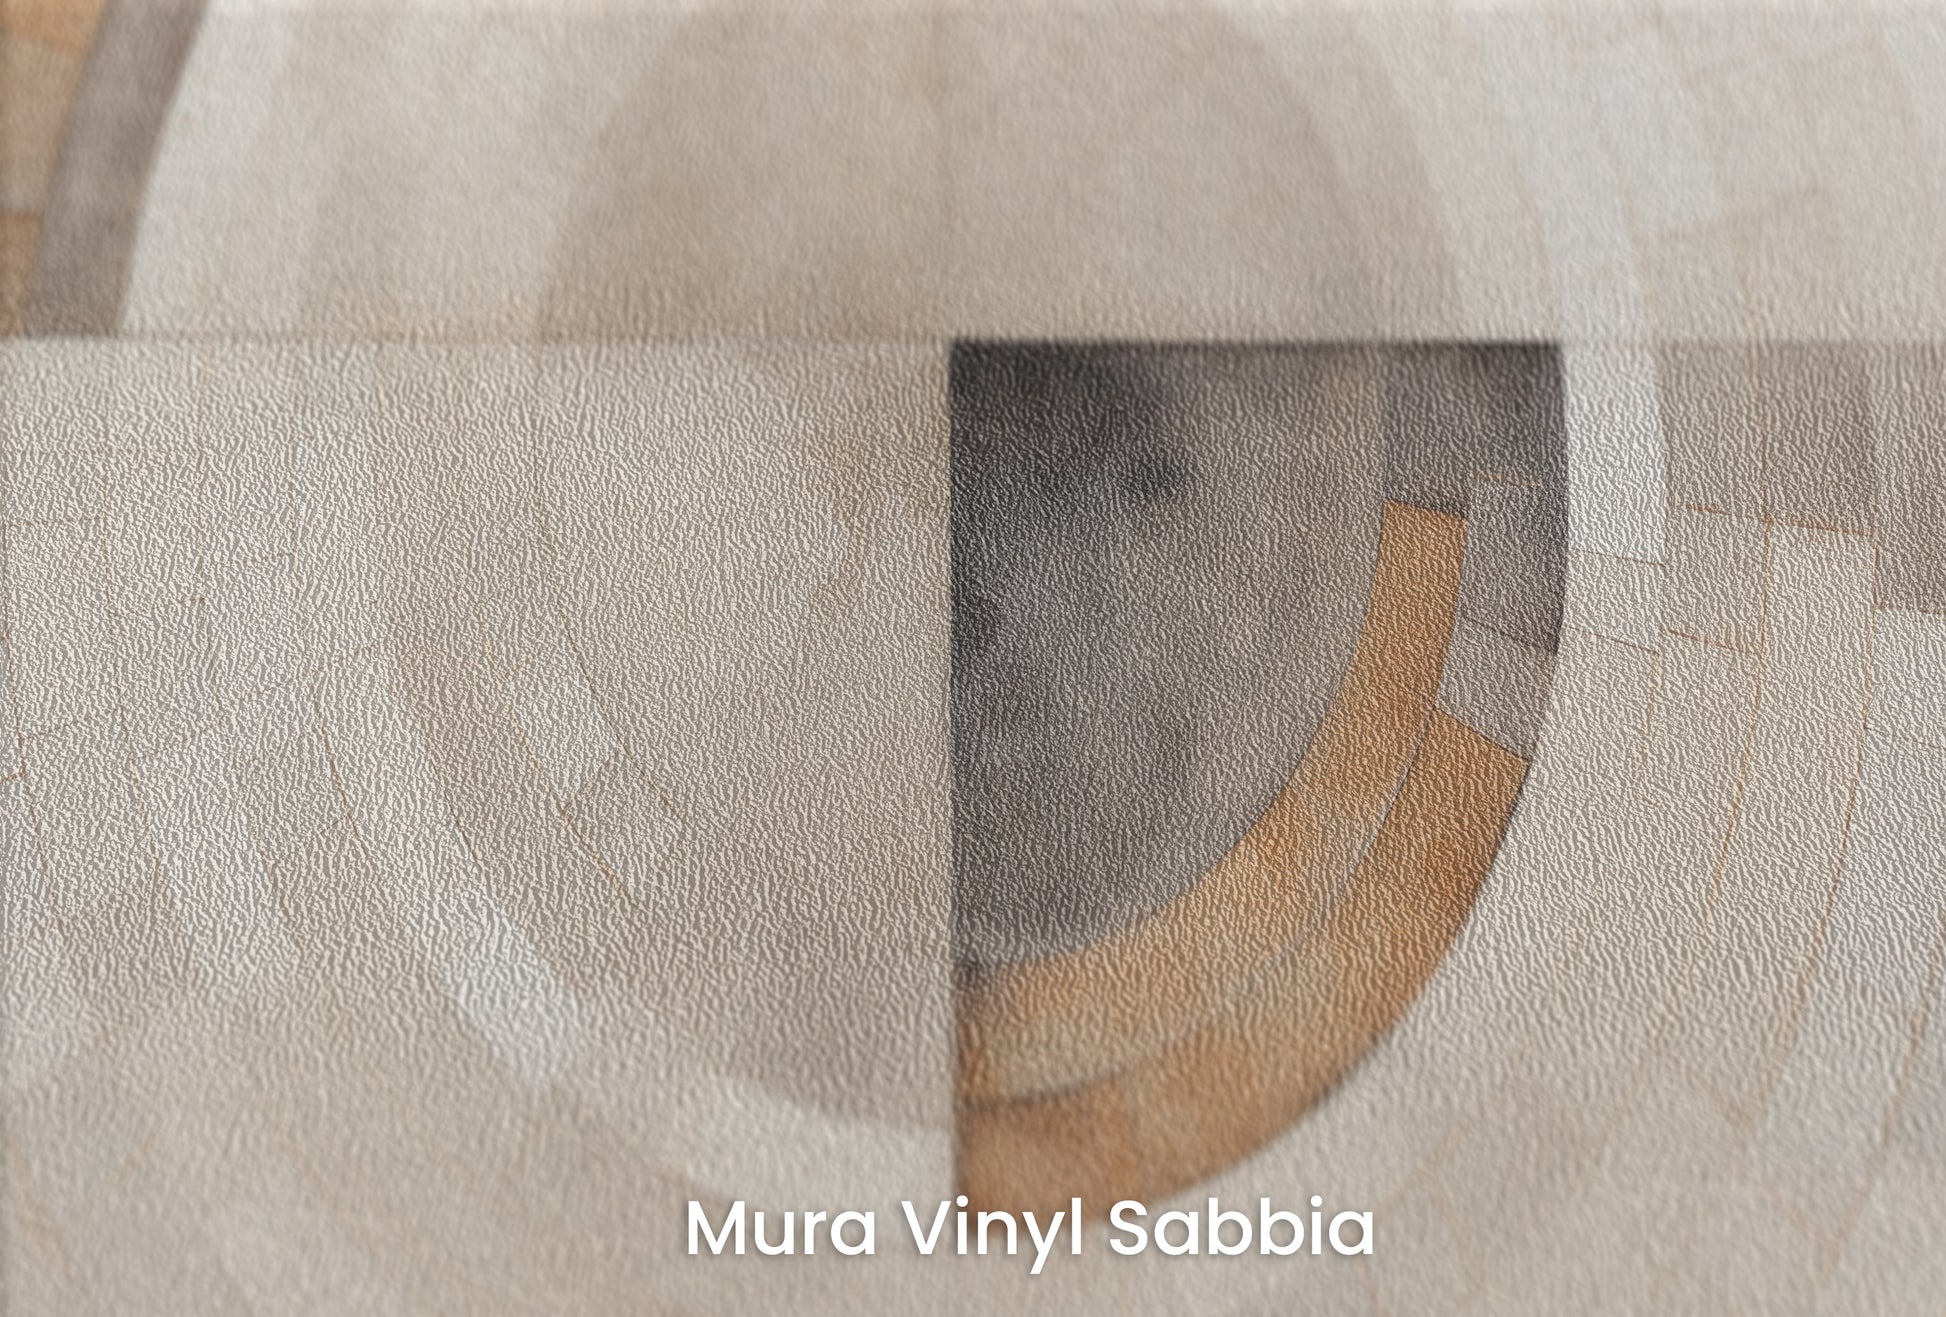 Zbliżenie na artystyczną fototapetę o nazwie MONOCHROME ECLIPSE MOSAIC na podłożu Mura Vinyl Sabbia struktura grubego ziarna piasku.